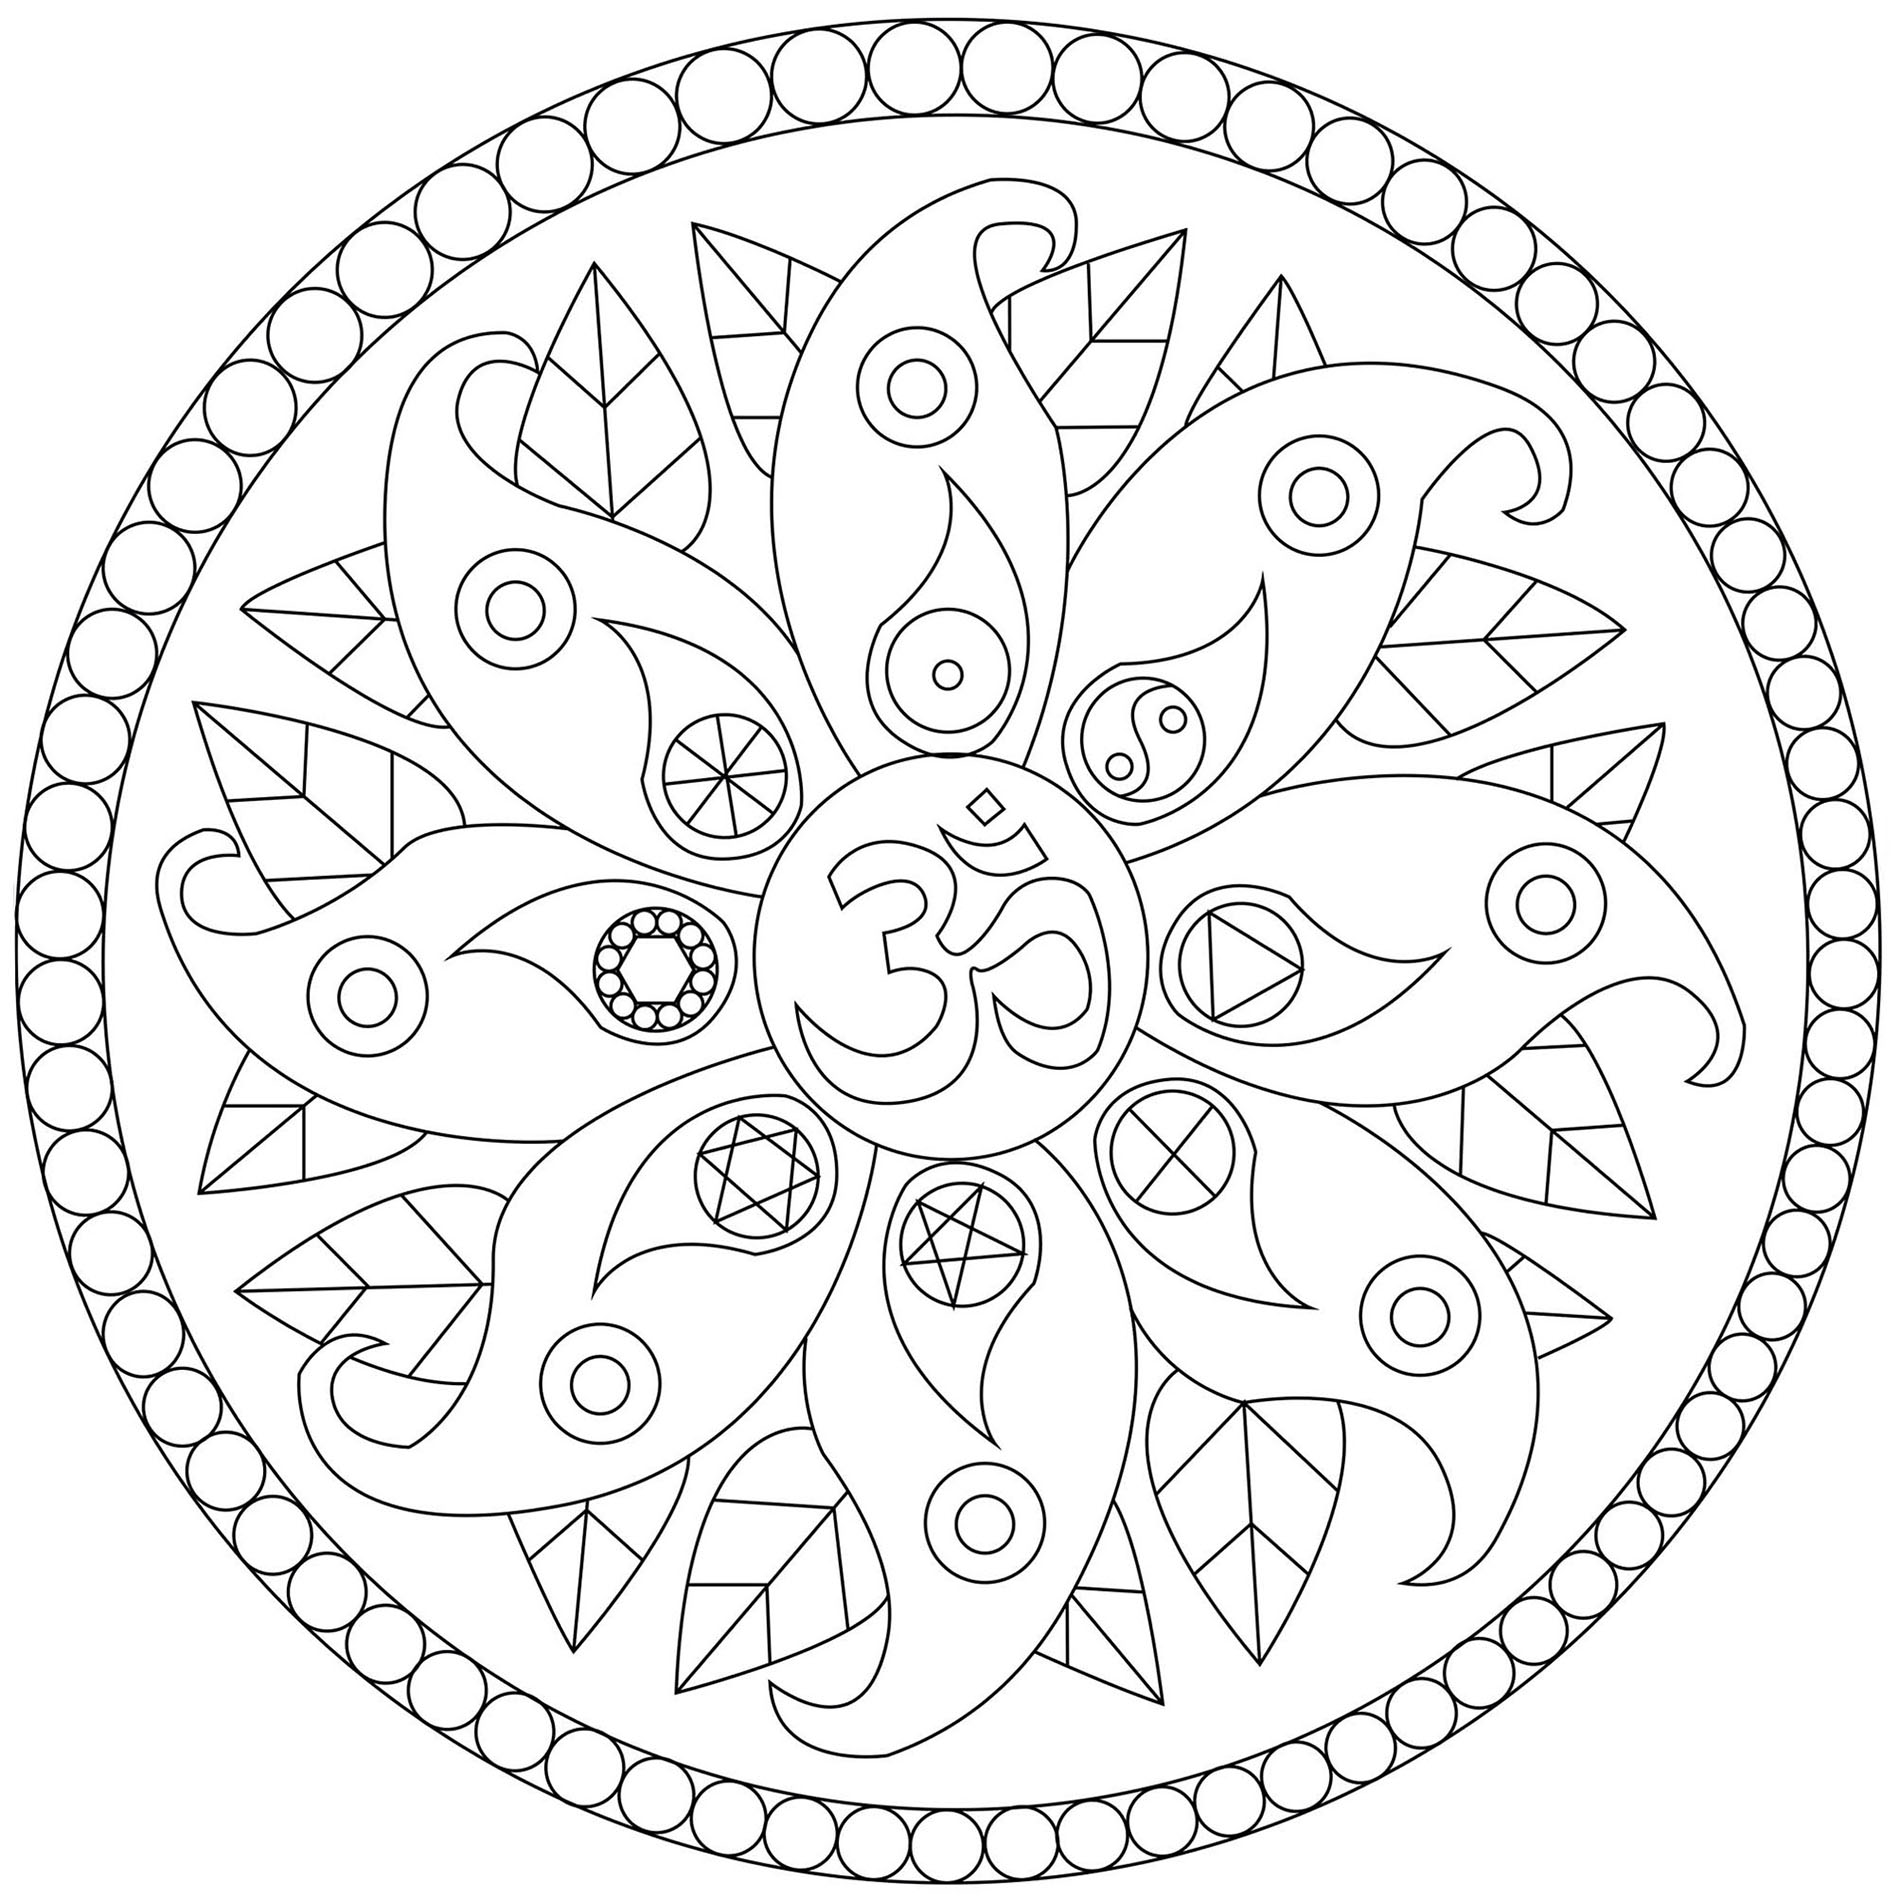 Motivos vegetales y símbolos diversos: Yin y Yang, Om .., Artista : Caillou